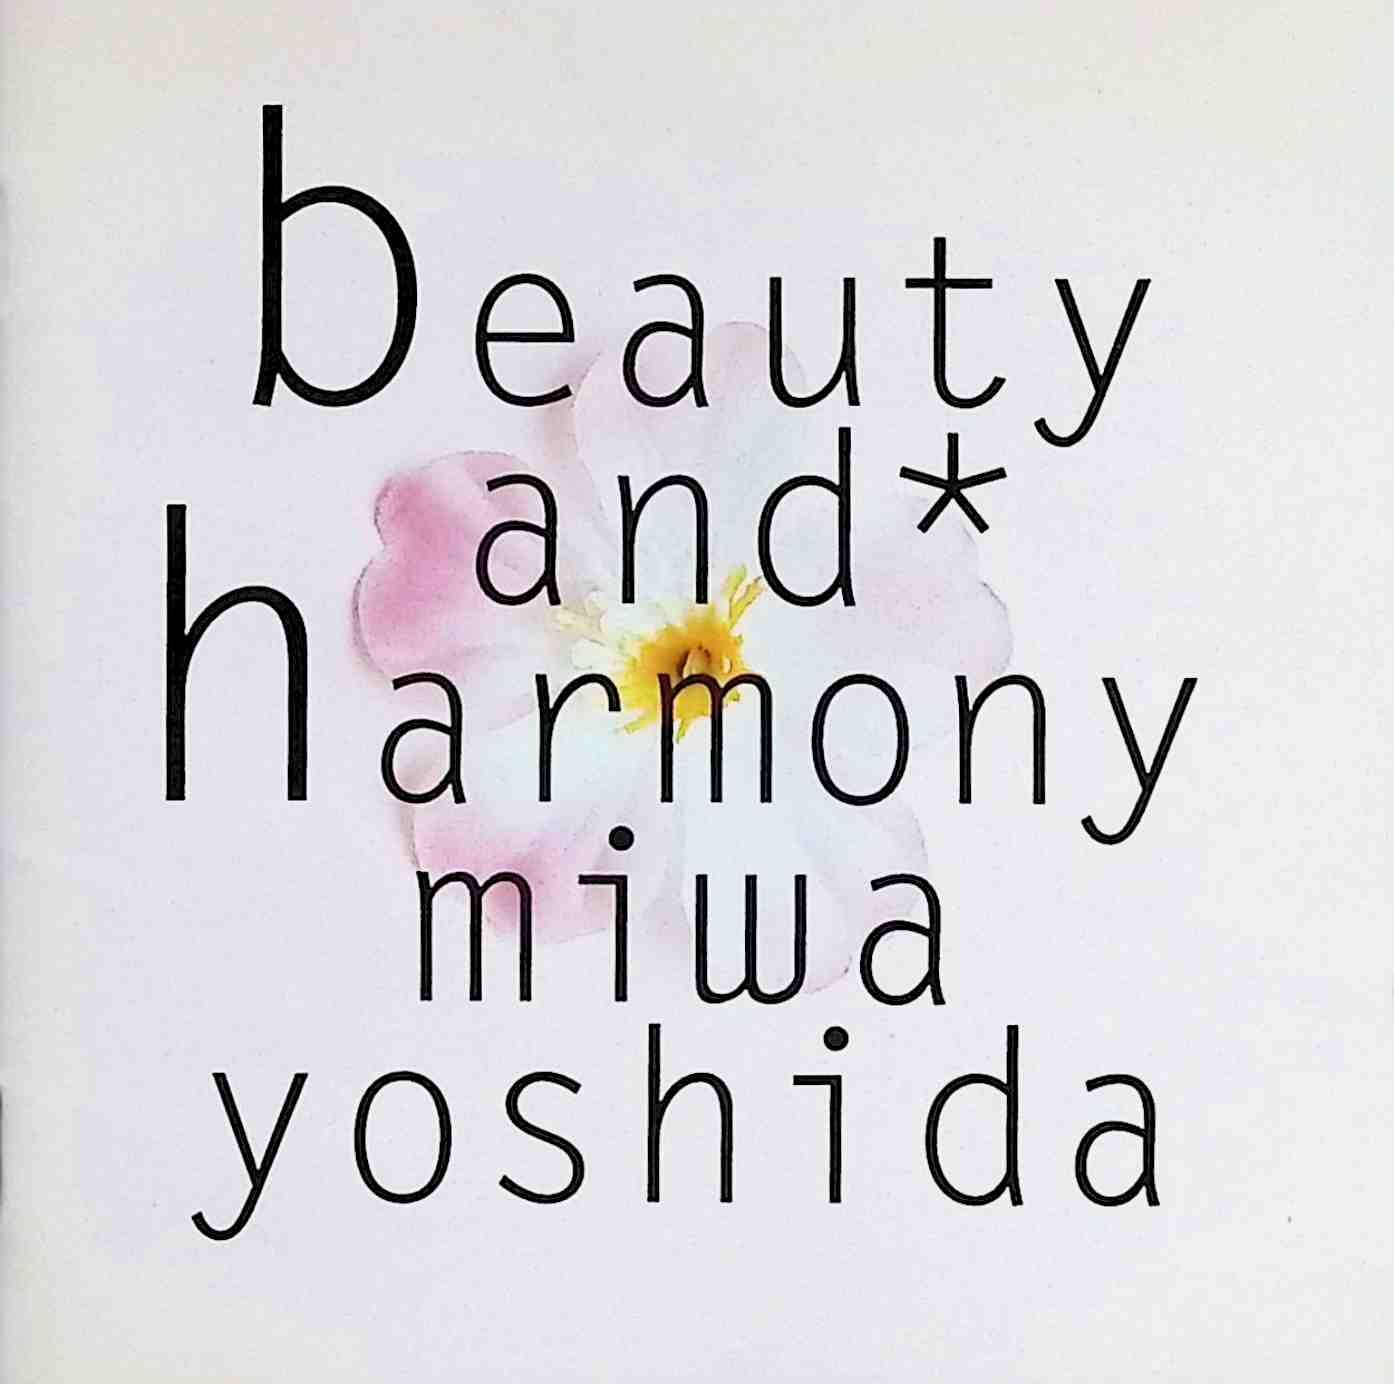 beauty and harmony / 吉田美和 (CD)